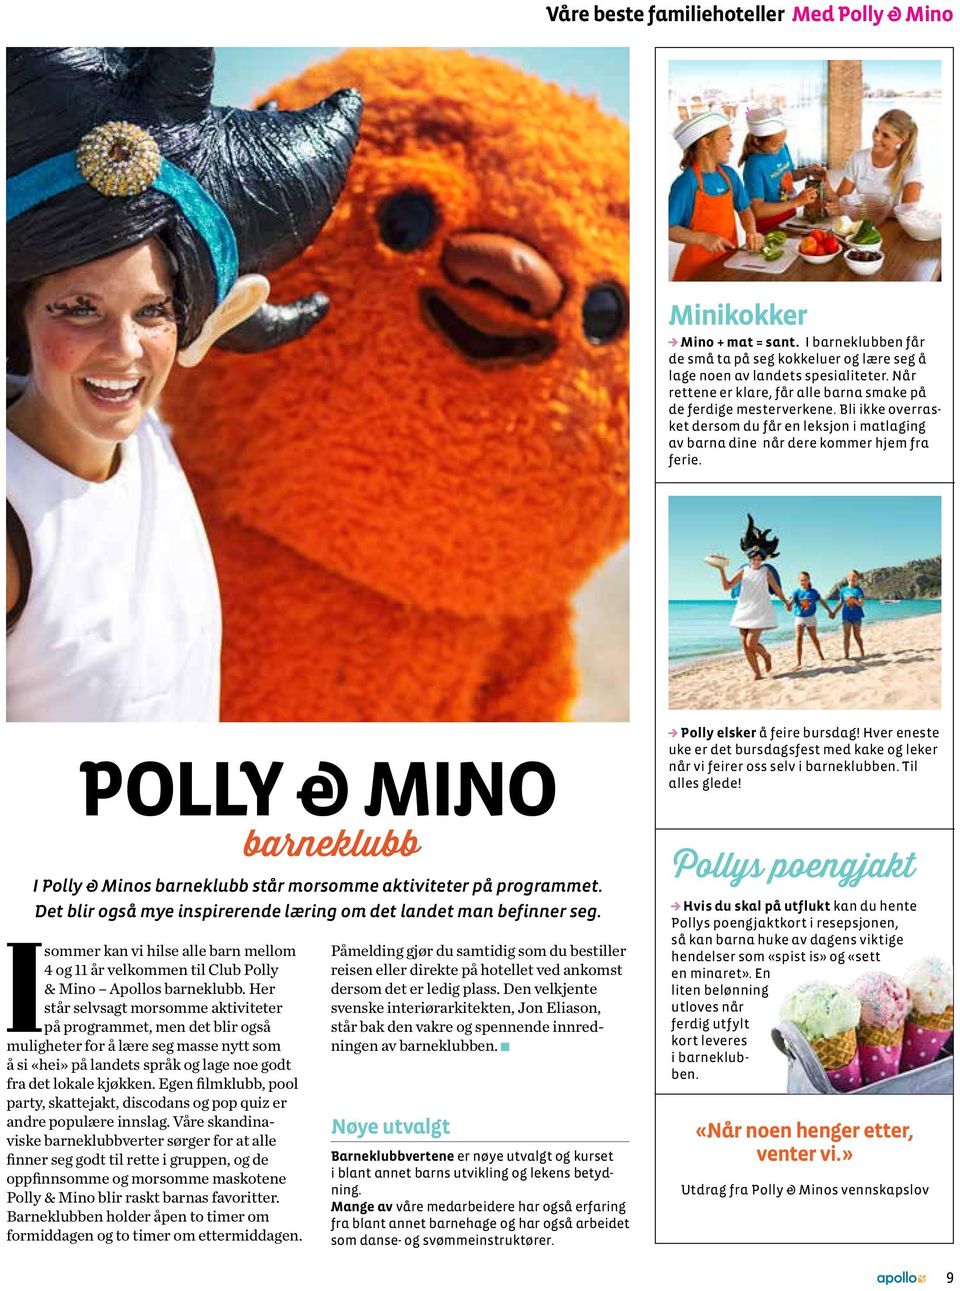 POLLY & MINO I Polly & Minos barneklubb står morsomme aktiviteter på programmet. Det blir også mye inspirerende læring om det landet man befinner seg.